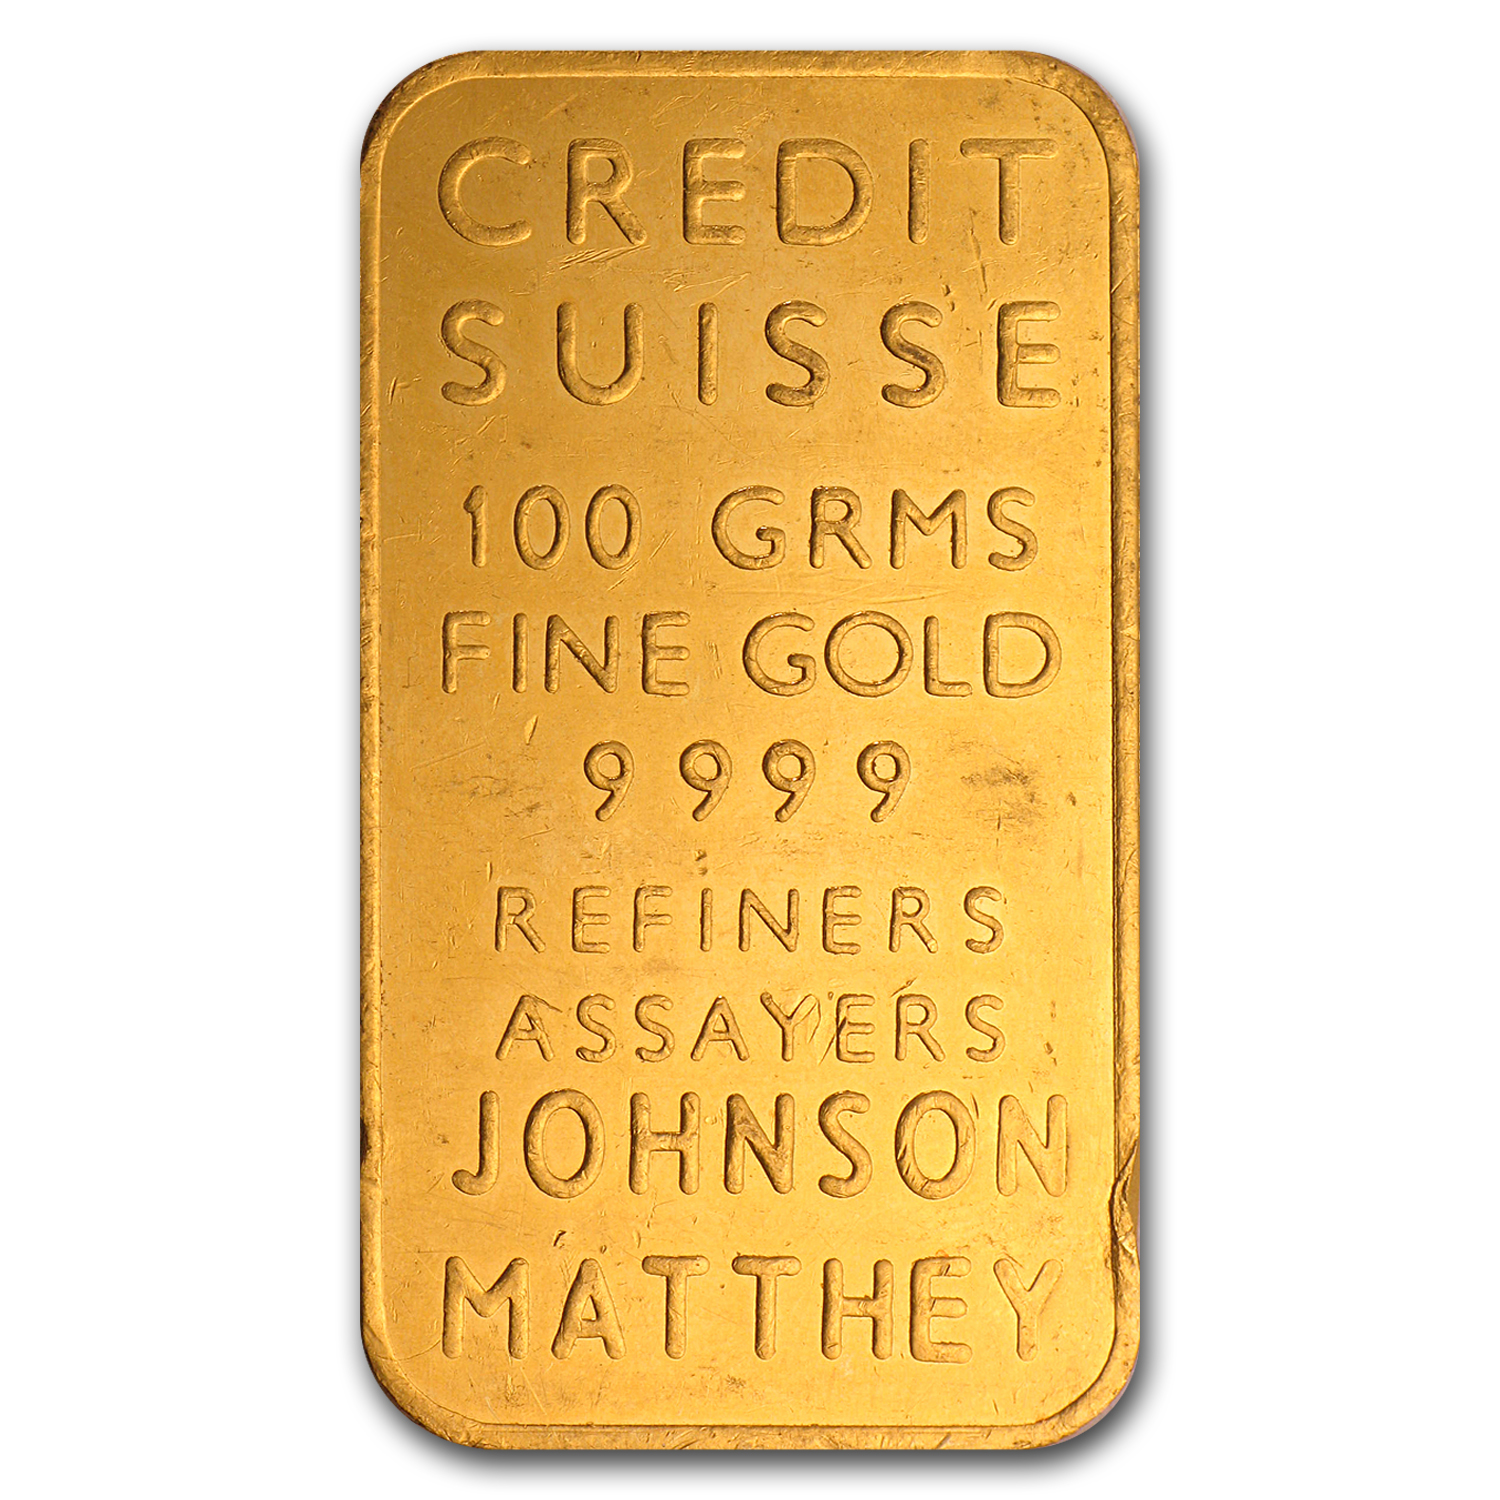 1 oz credit suisse gold bar old designs